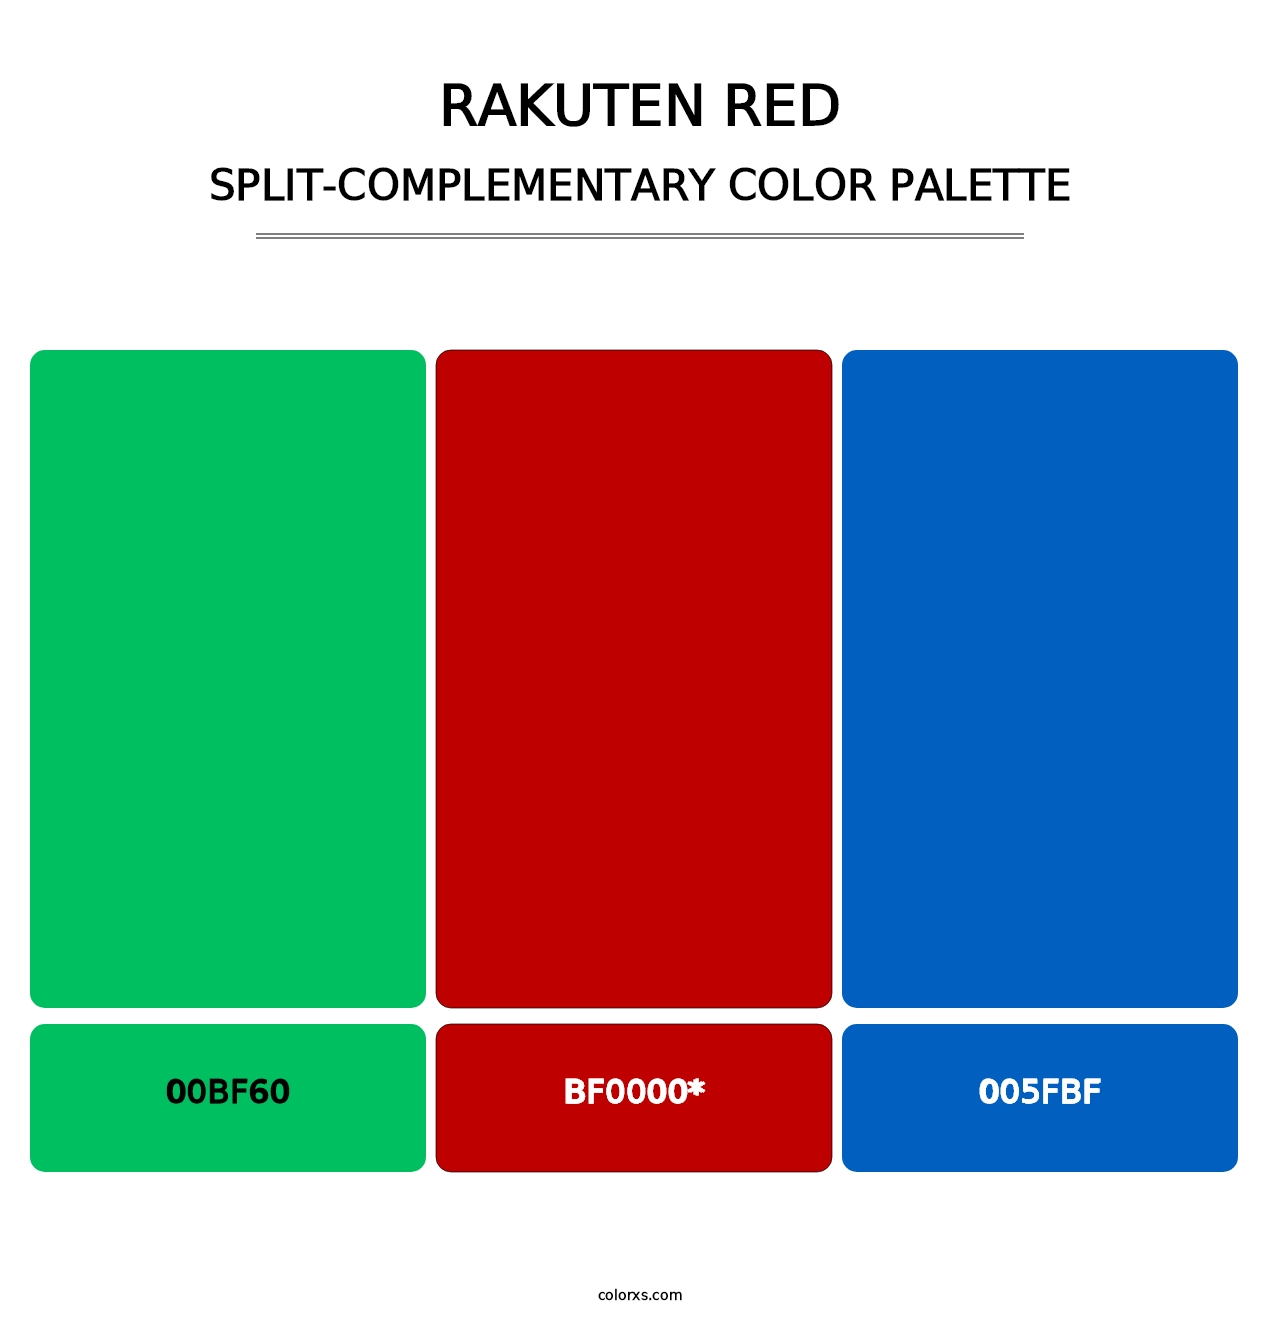 Rakuten Red - Split-Complementary Color Palette